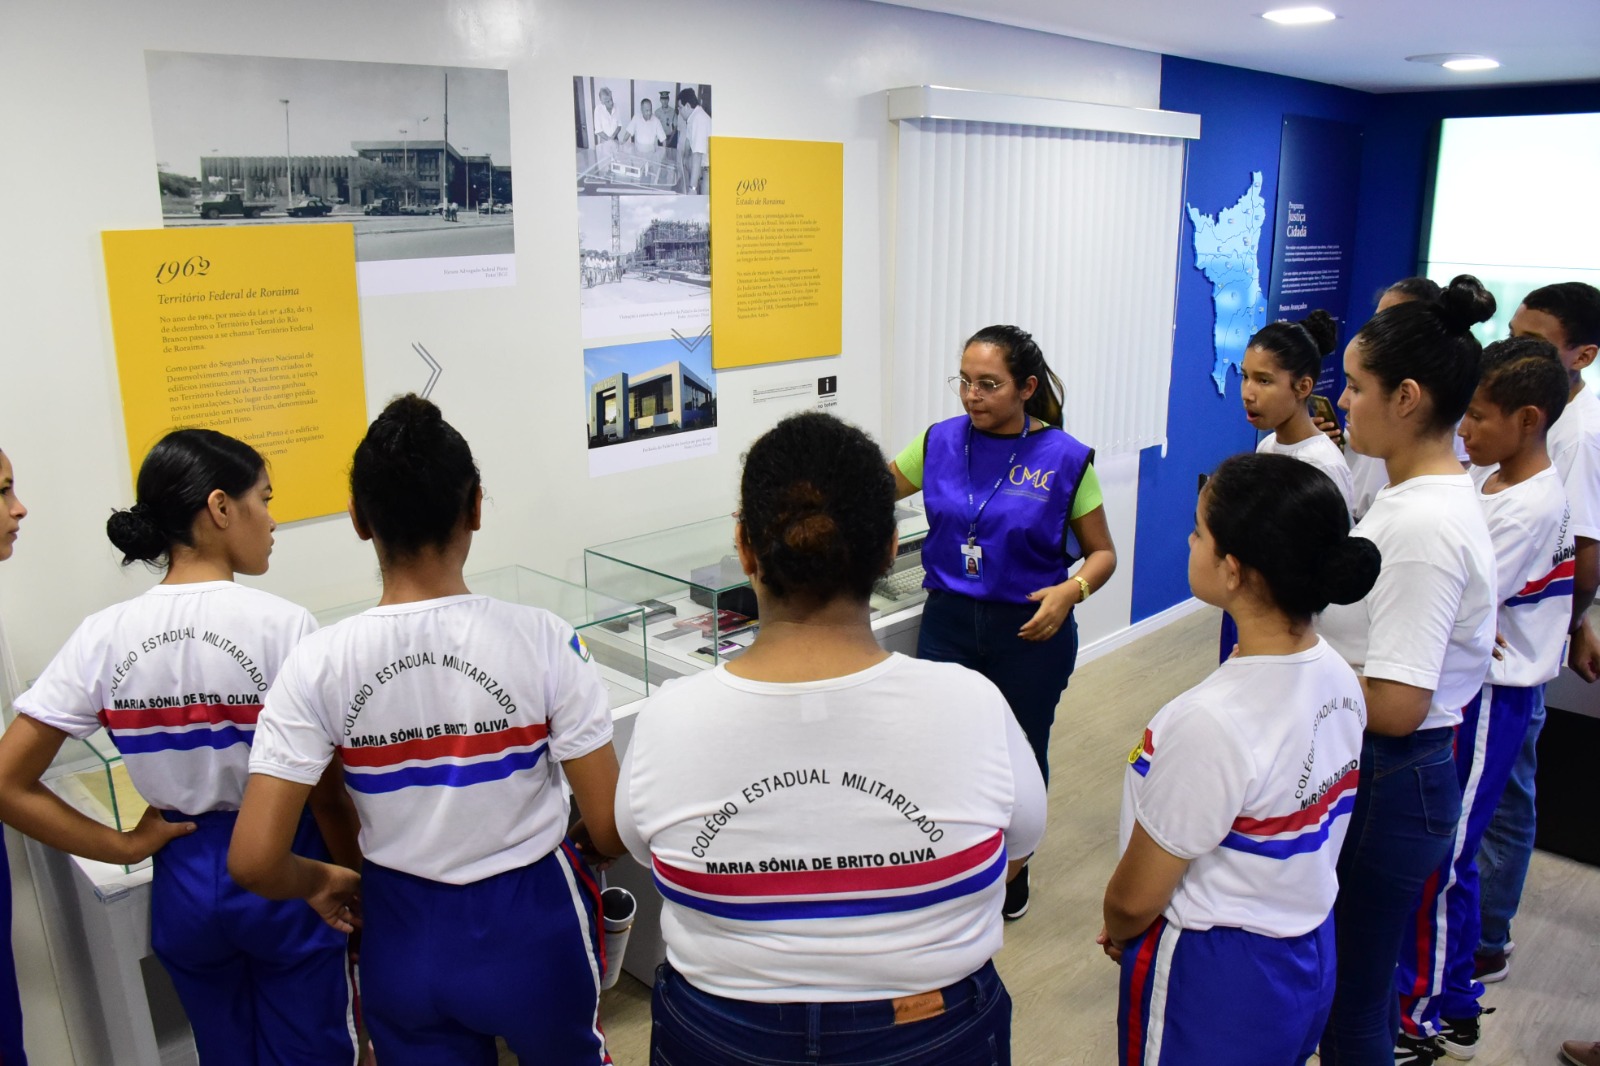  Imagem colorida mostra alunas e alunos do Colégio Estadual Militarizado Maria Sônia de Brito Oliva, durante visita assistida no Centro de Mémoria e Cultura.